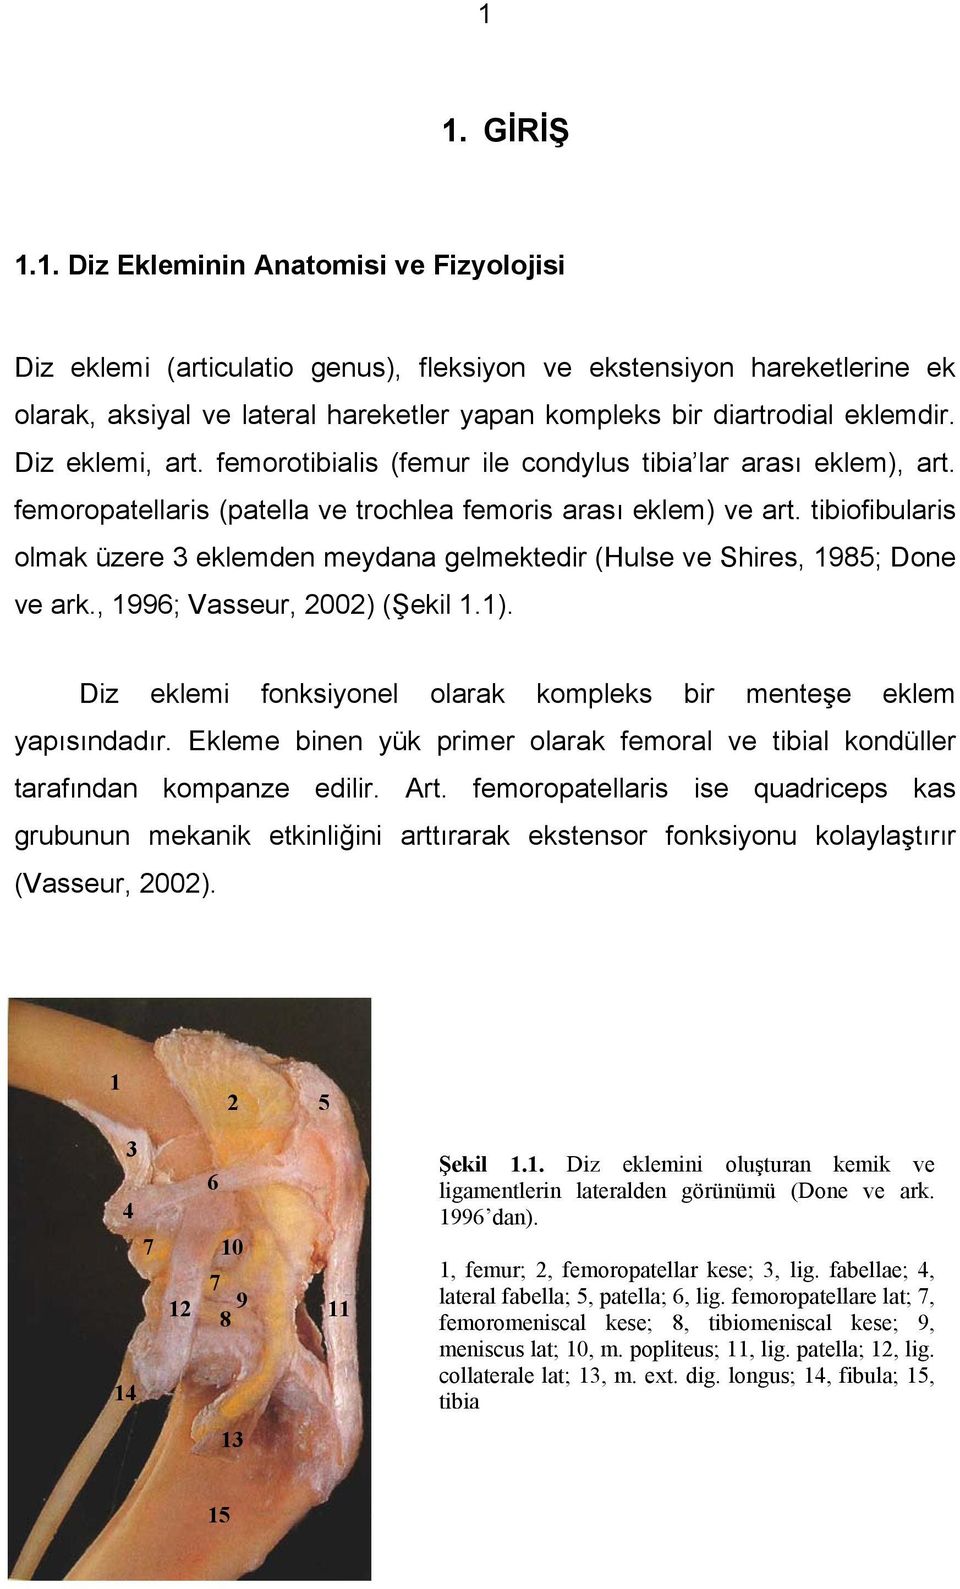 tibiofibularis olmak üzere 3 eklemden meydana gelmektedir (Hulse ve Shires, 1985; Done ve ark., 1996; Vasseur, 2002) (Şekil 1.1). Diz eklemi fonksiyonel olarak kompleks bir menteşe eklem yapısındadır.